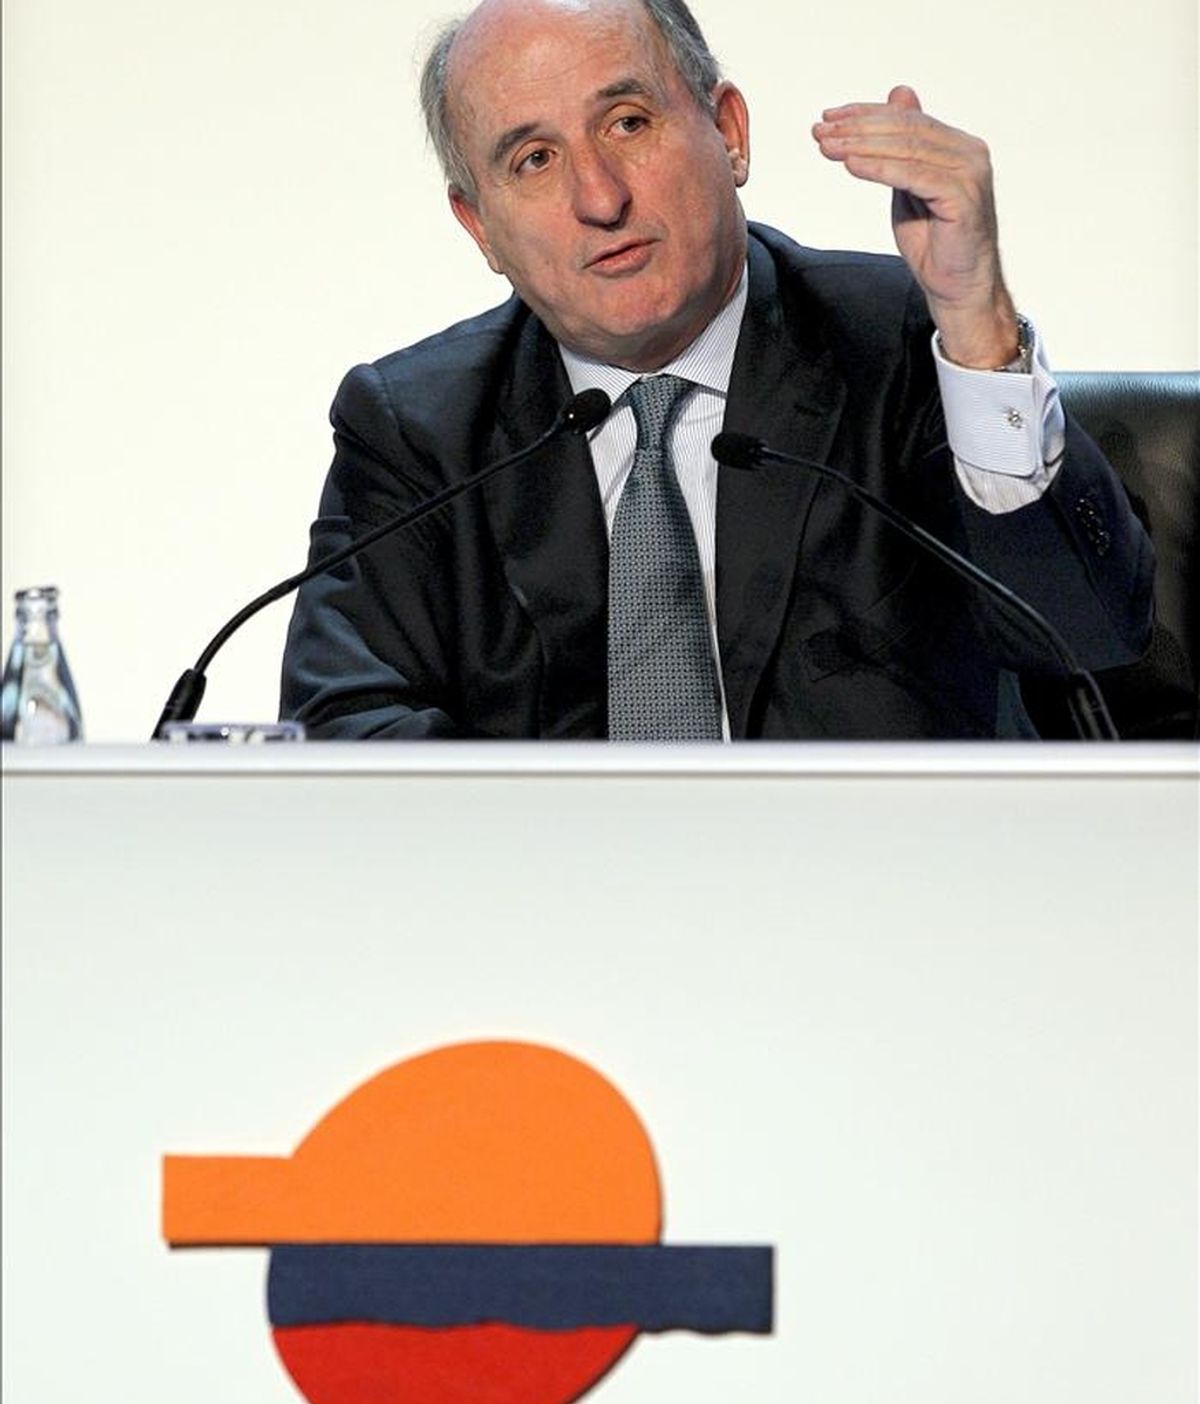 El presidente de la petrolera Repsol, Antonio Brufau. EFE/Archivo